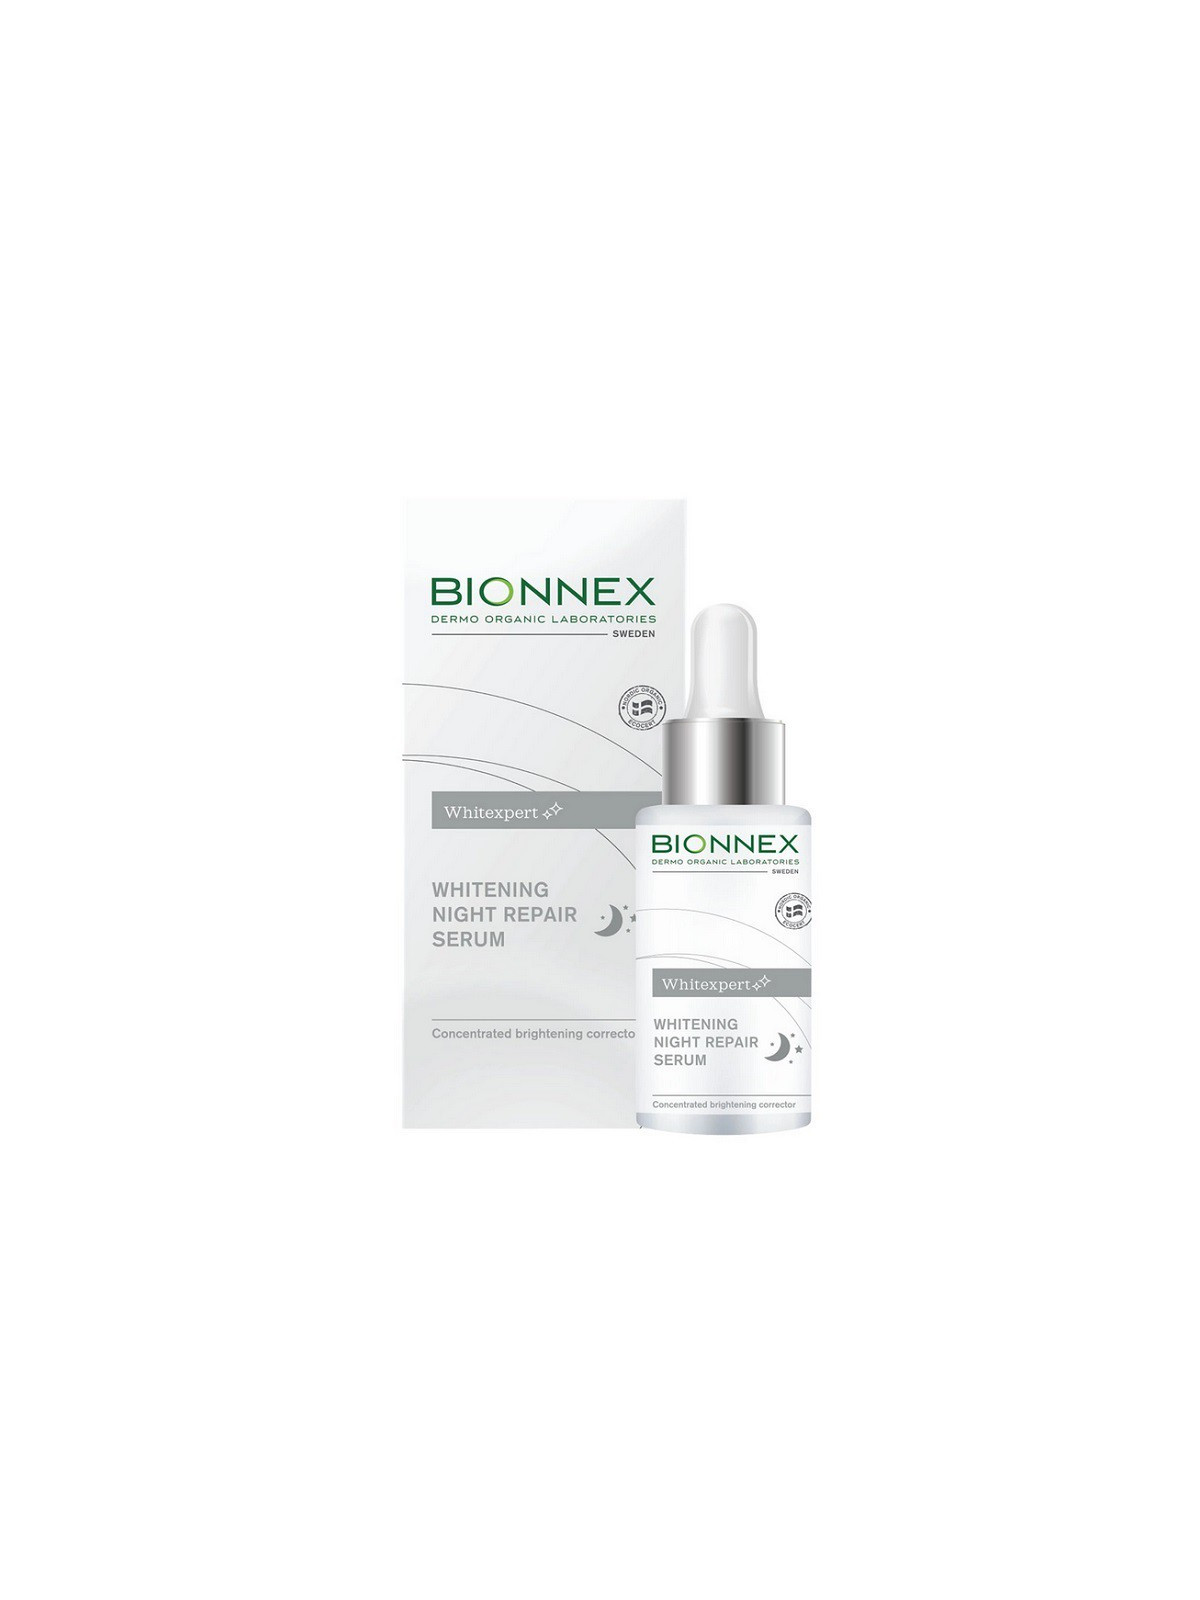 Naktinis atstatomasis serumas nuo pigmentinių dėmių Bionnex Whitexpert Whitening Night Repair Serum  20 ml